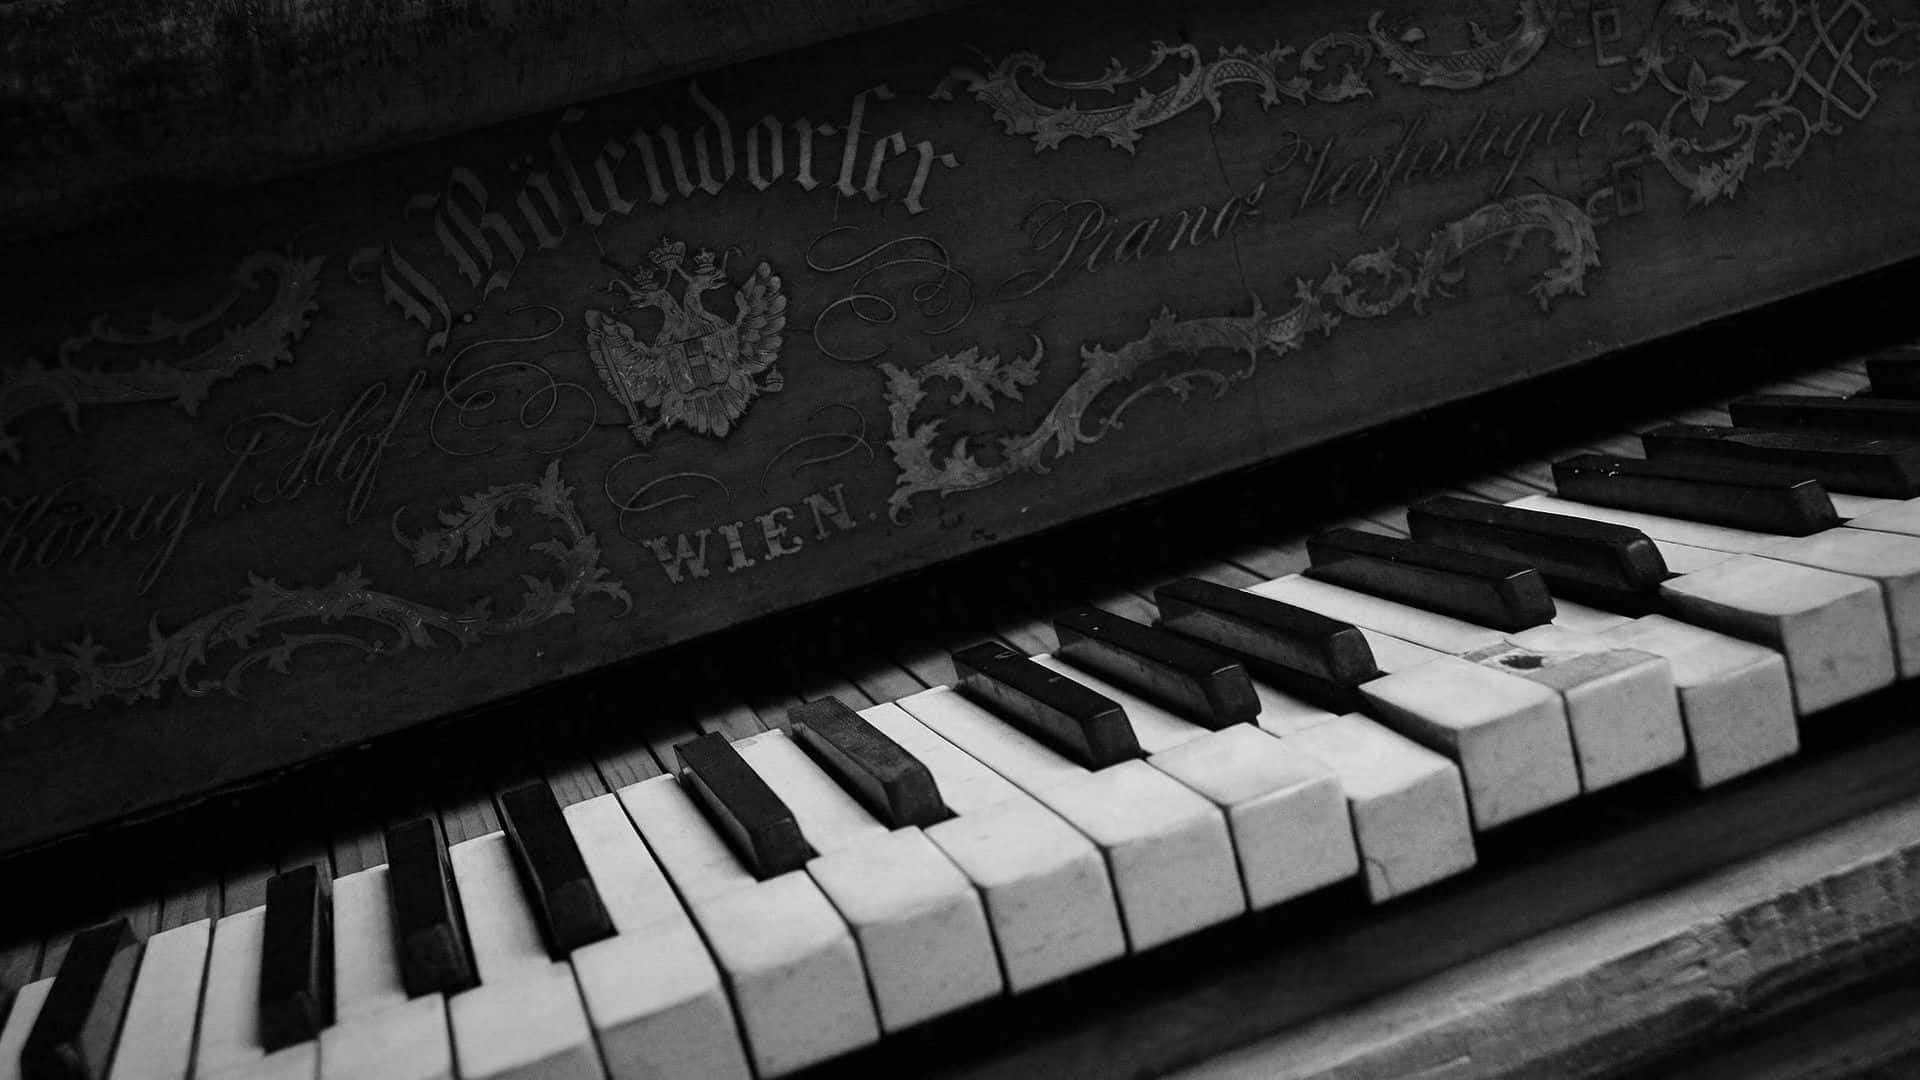 Imparaa Suonare Il Pianoforte E Creare Musica